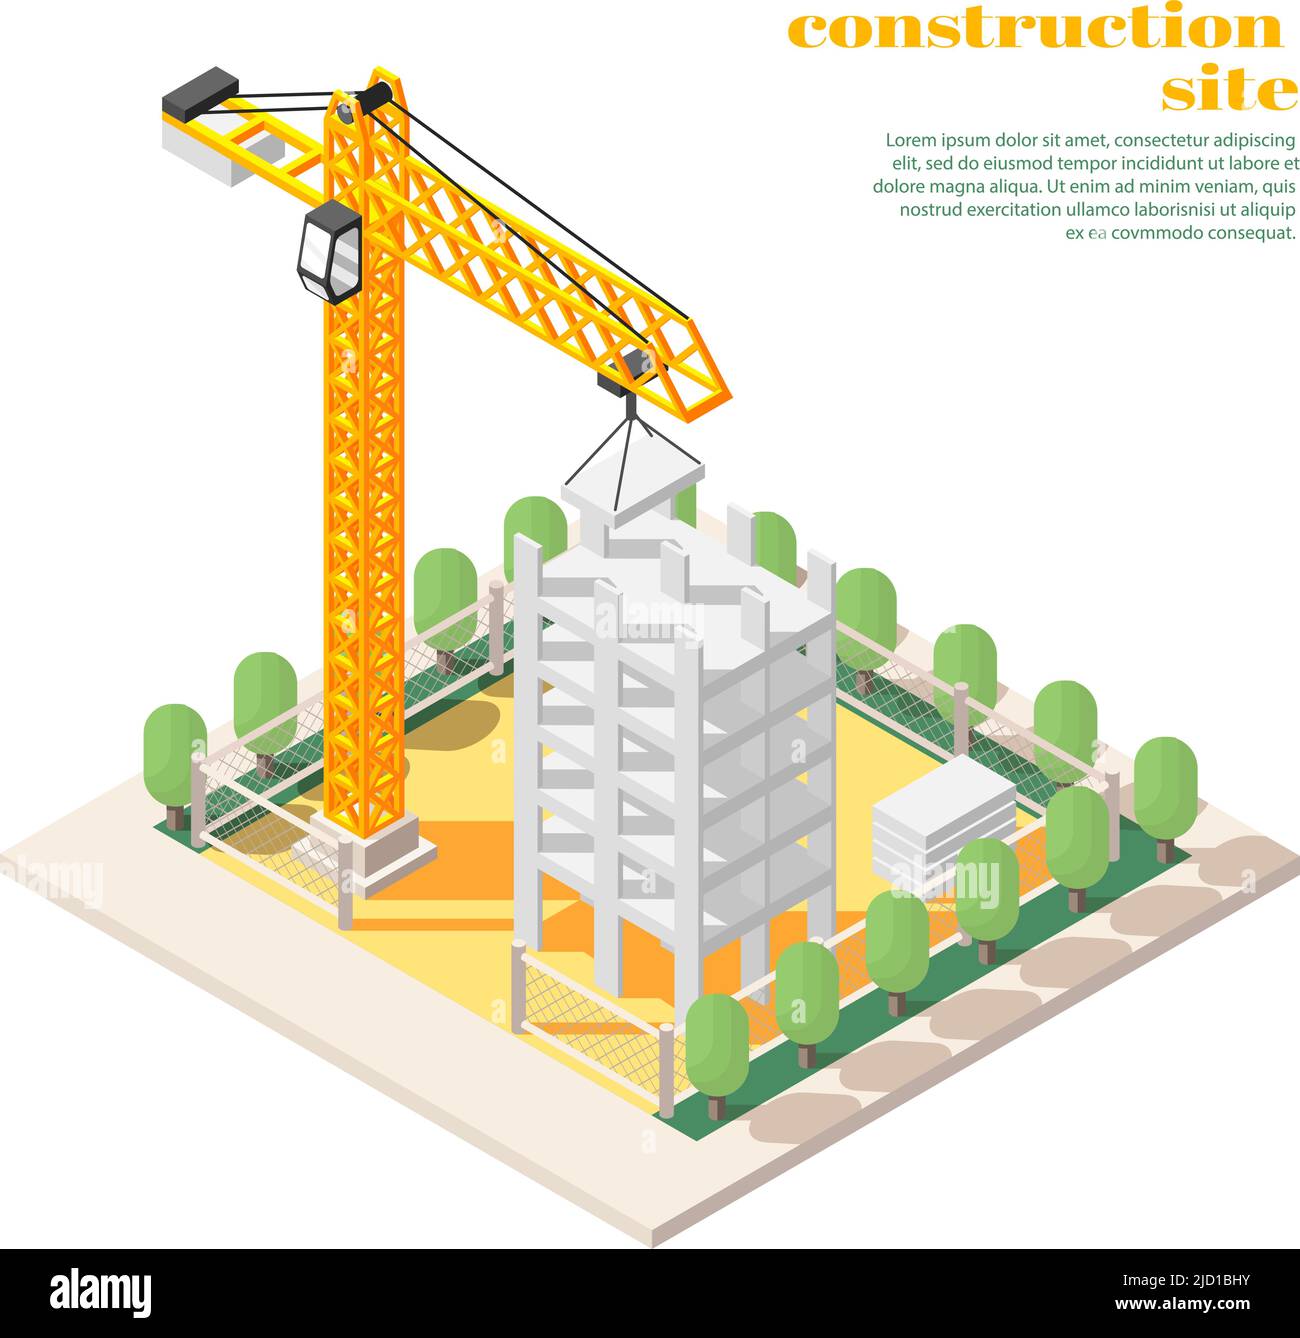 Bauingenieurwesen Projekte Rollen Aufgaben isometrische Zusammensetzung mit Turmdrehkran auf Baustelle Vektor illustrati Stock Vektor